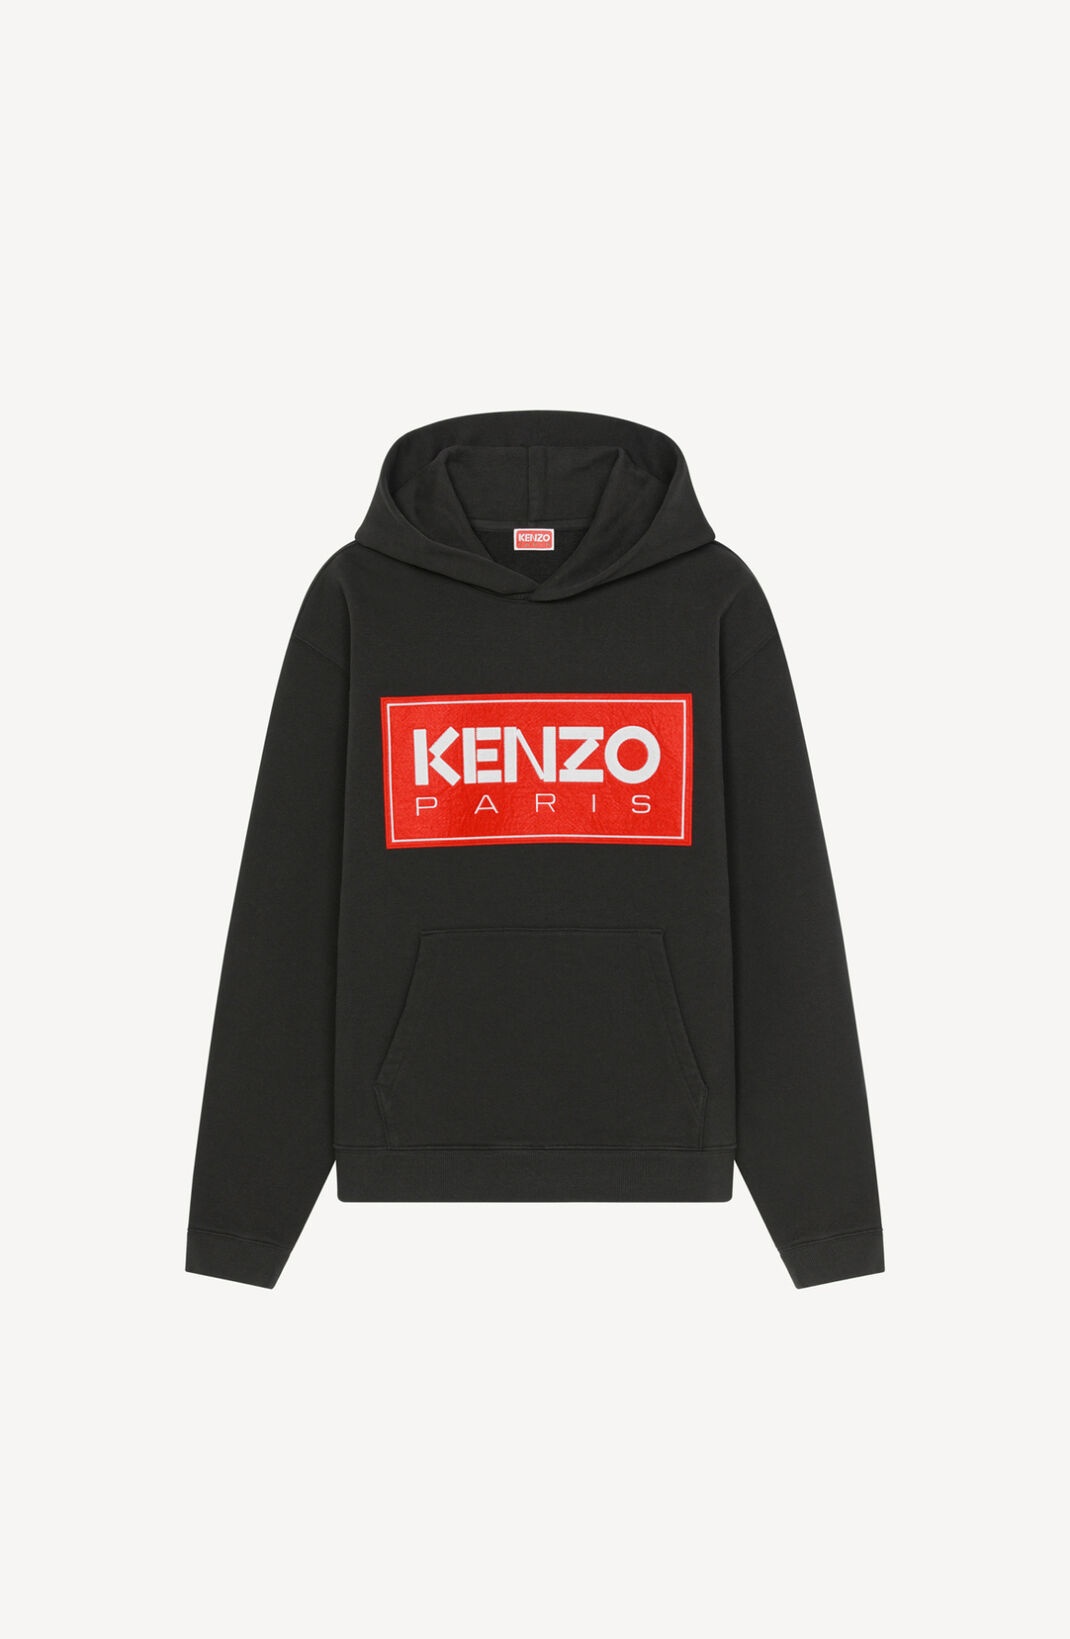 KENZO Paris hooded sweatshirt - 1